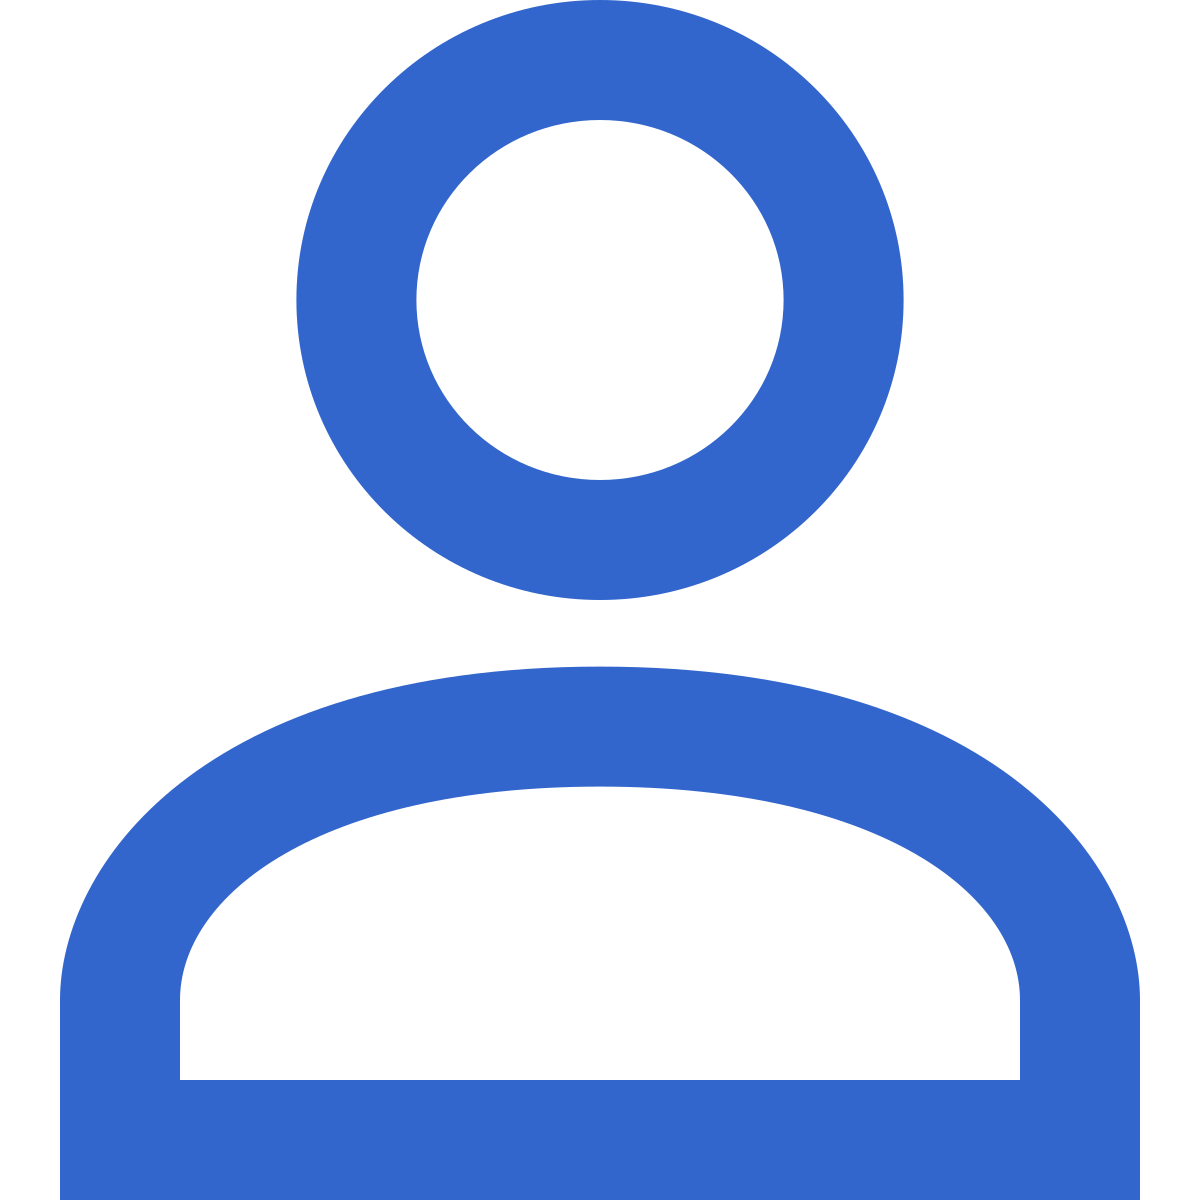 Windows user profile icon